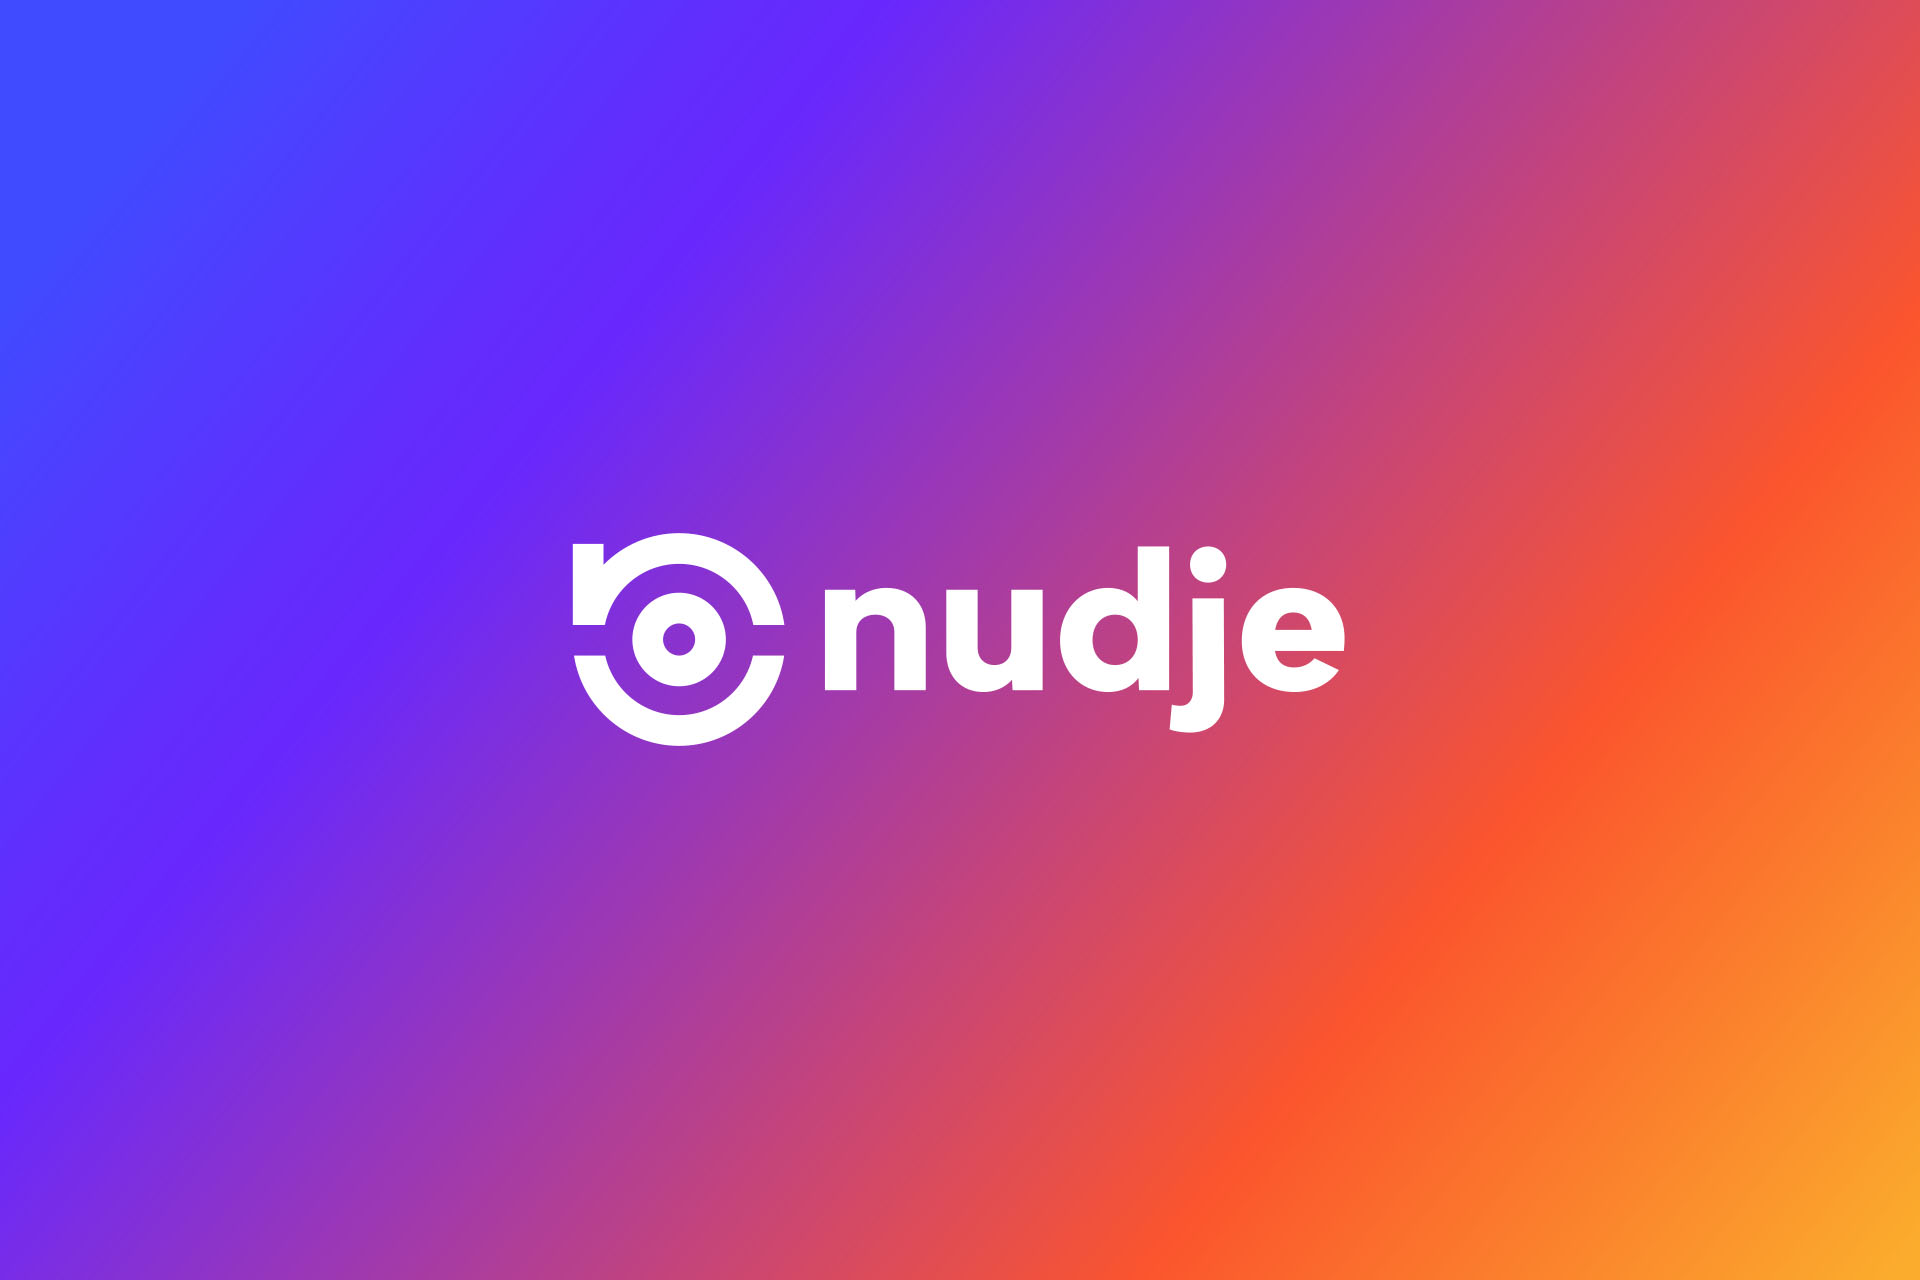 nudge logo design